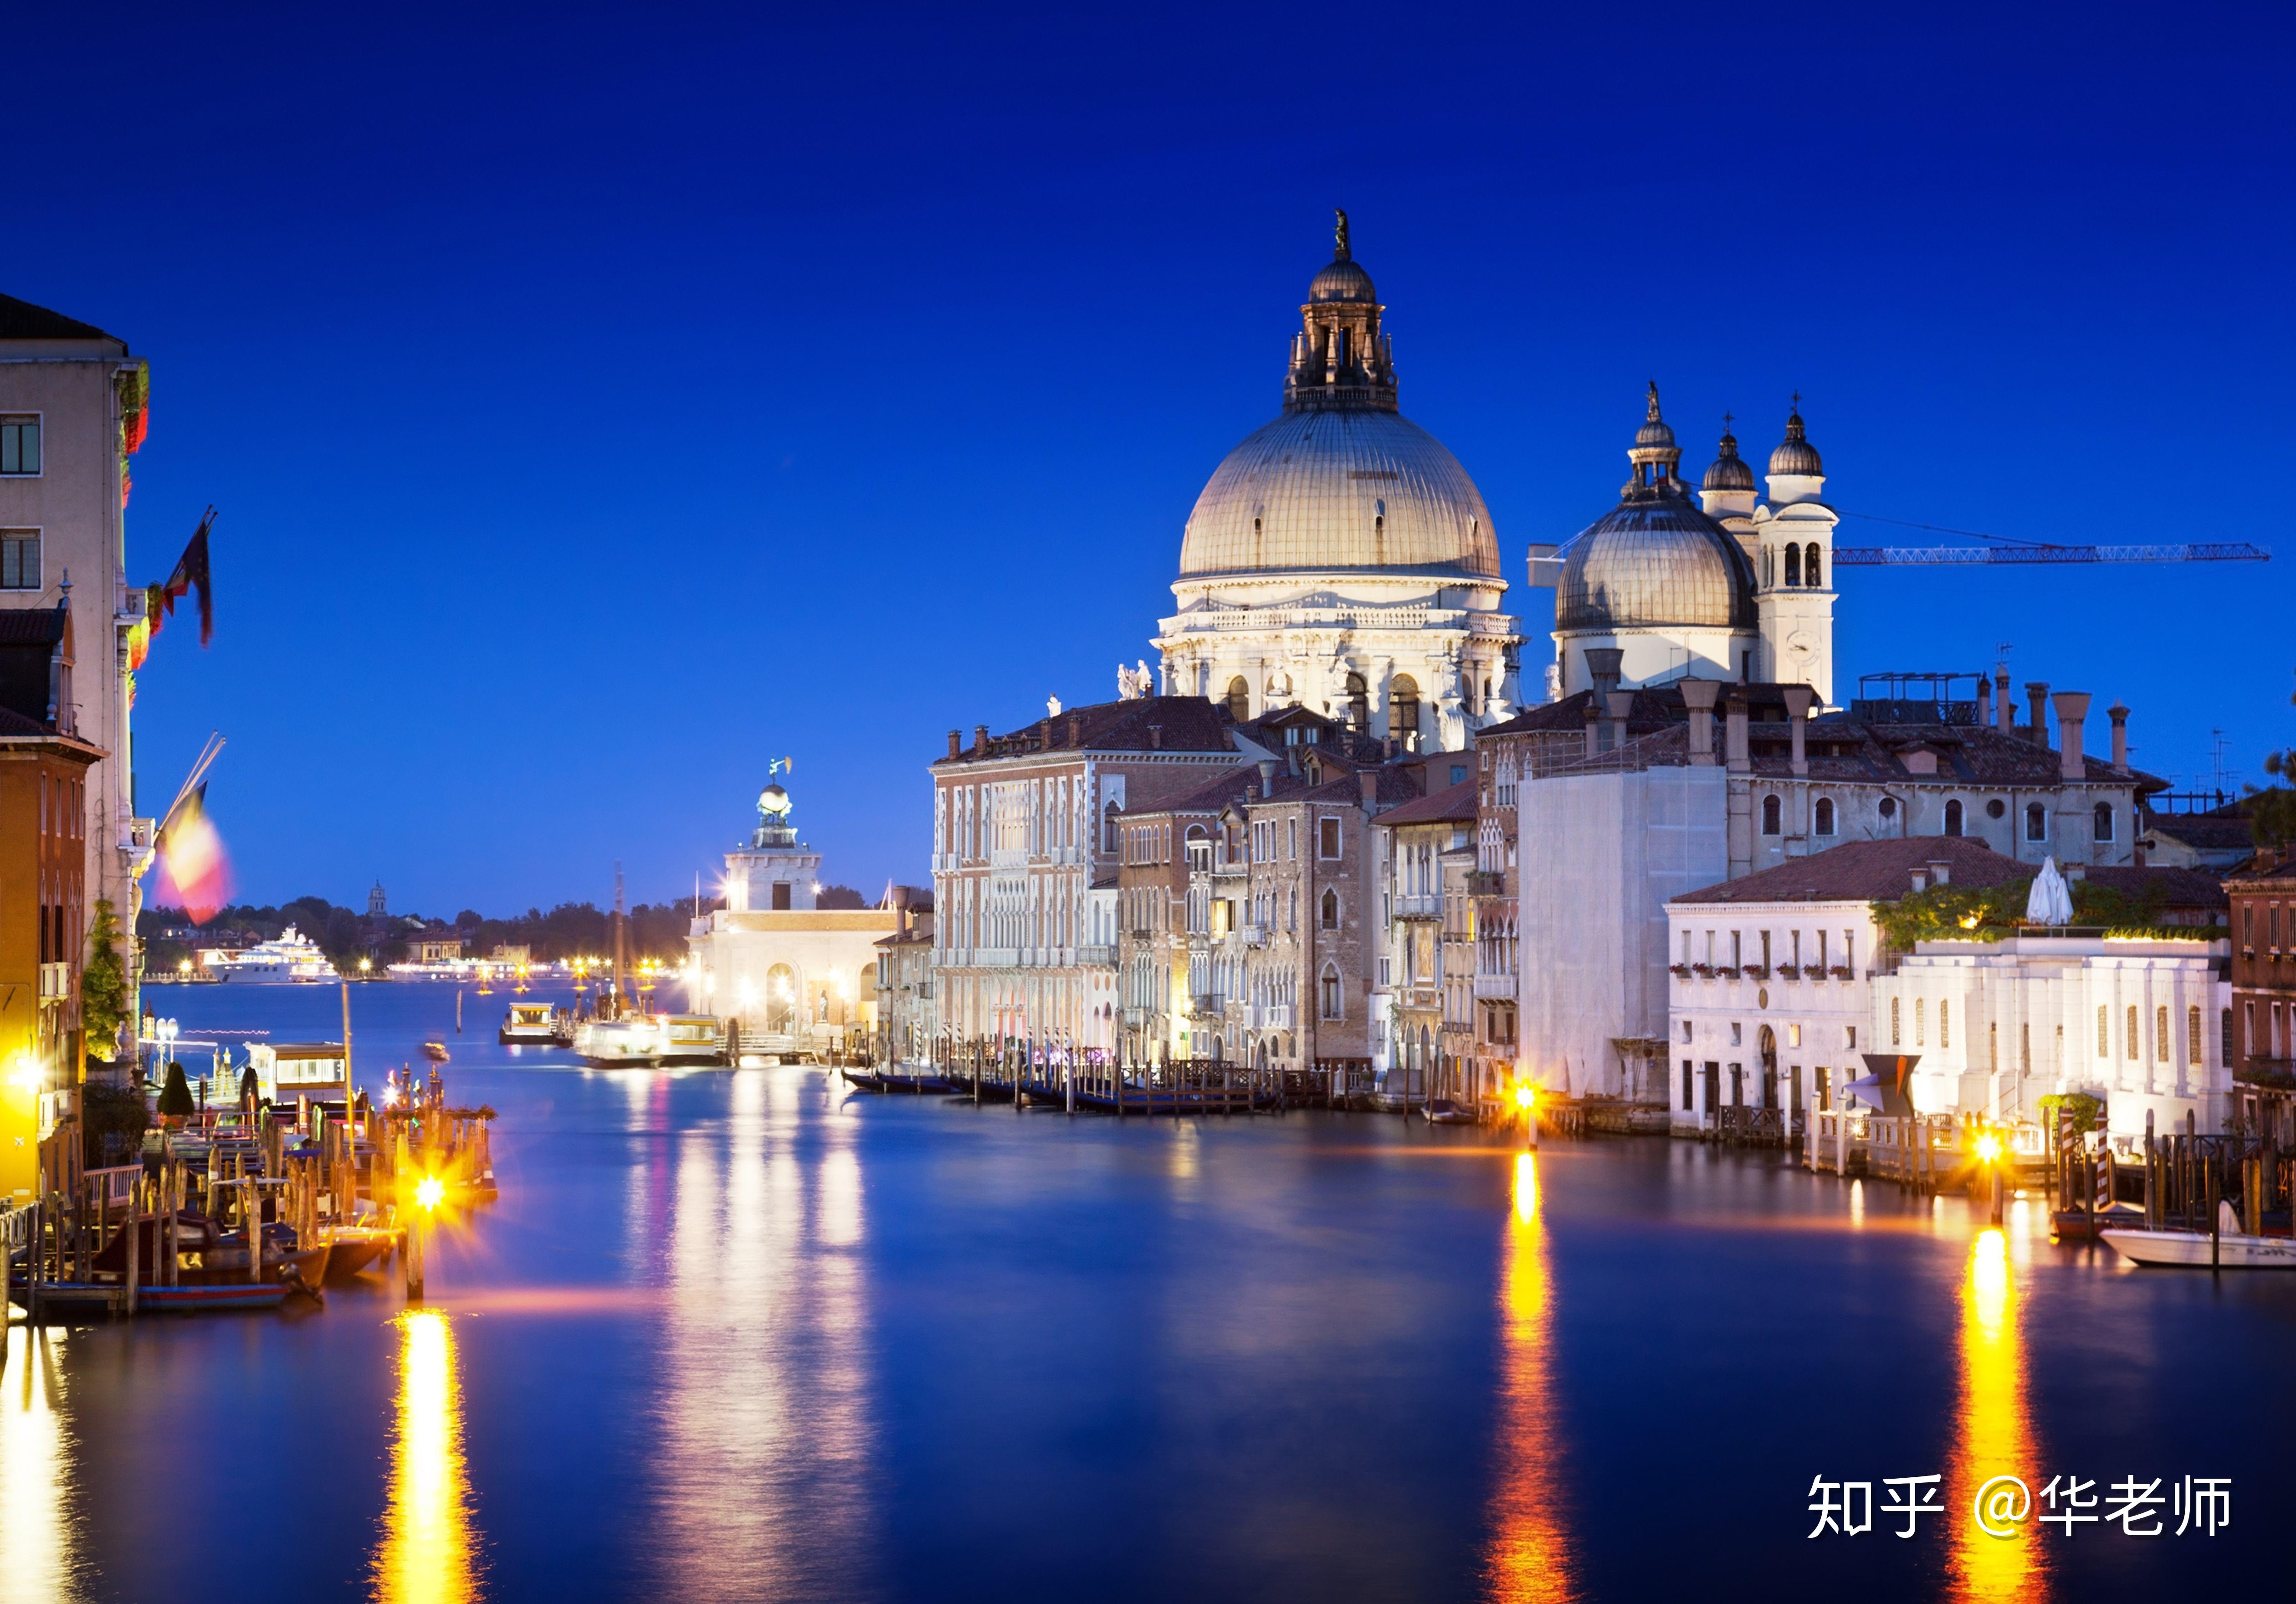 【携程攻略】威尼斯黄金宫景点,对于喜欢艺术的人们来说，这里是绝佳的欣赏文艺的好地方，馆里珍藏了…